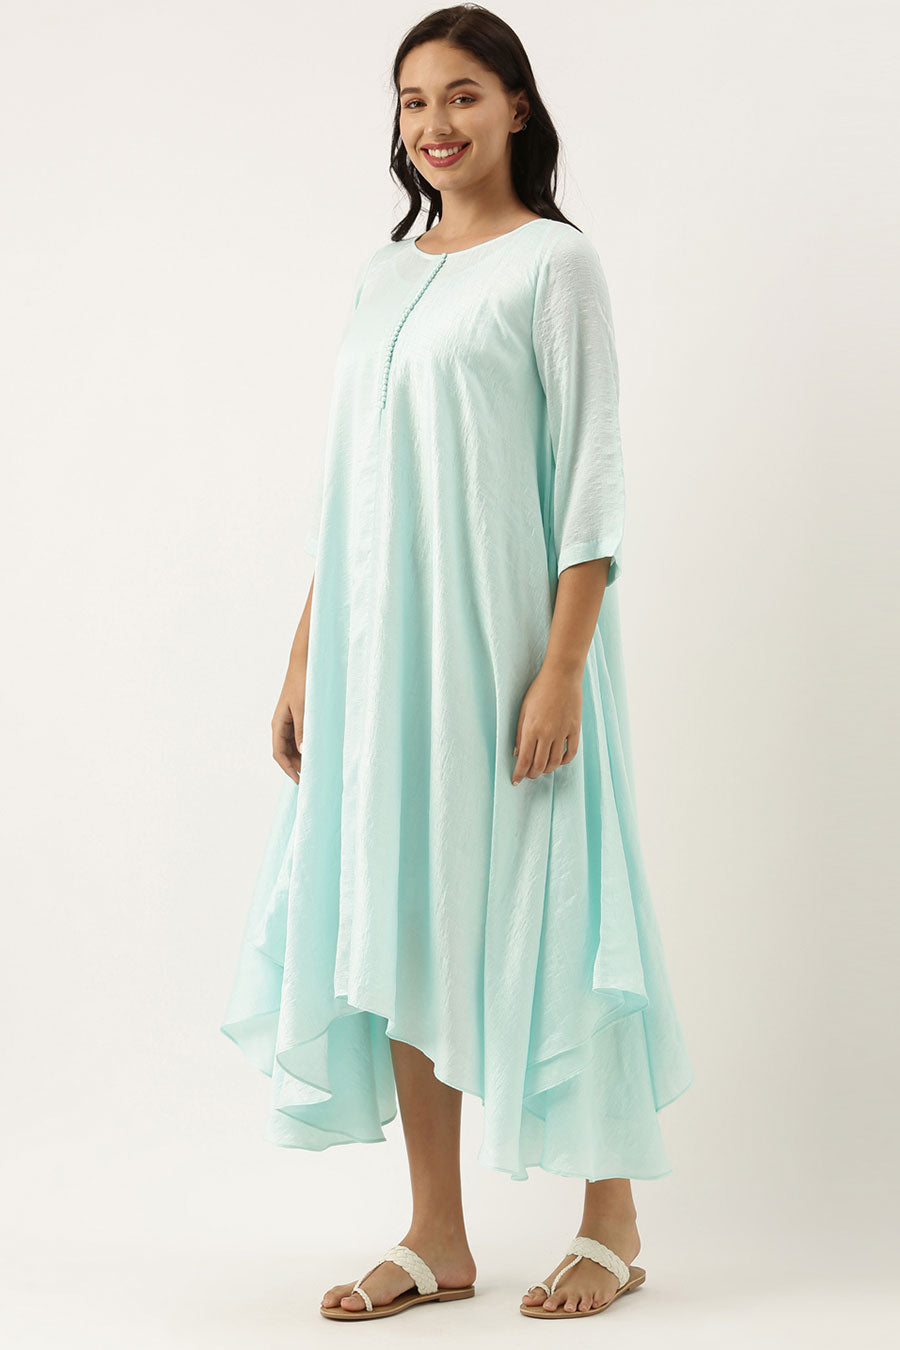 Aqua Blue Silk Polti Dress